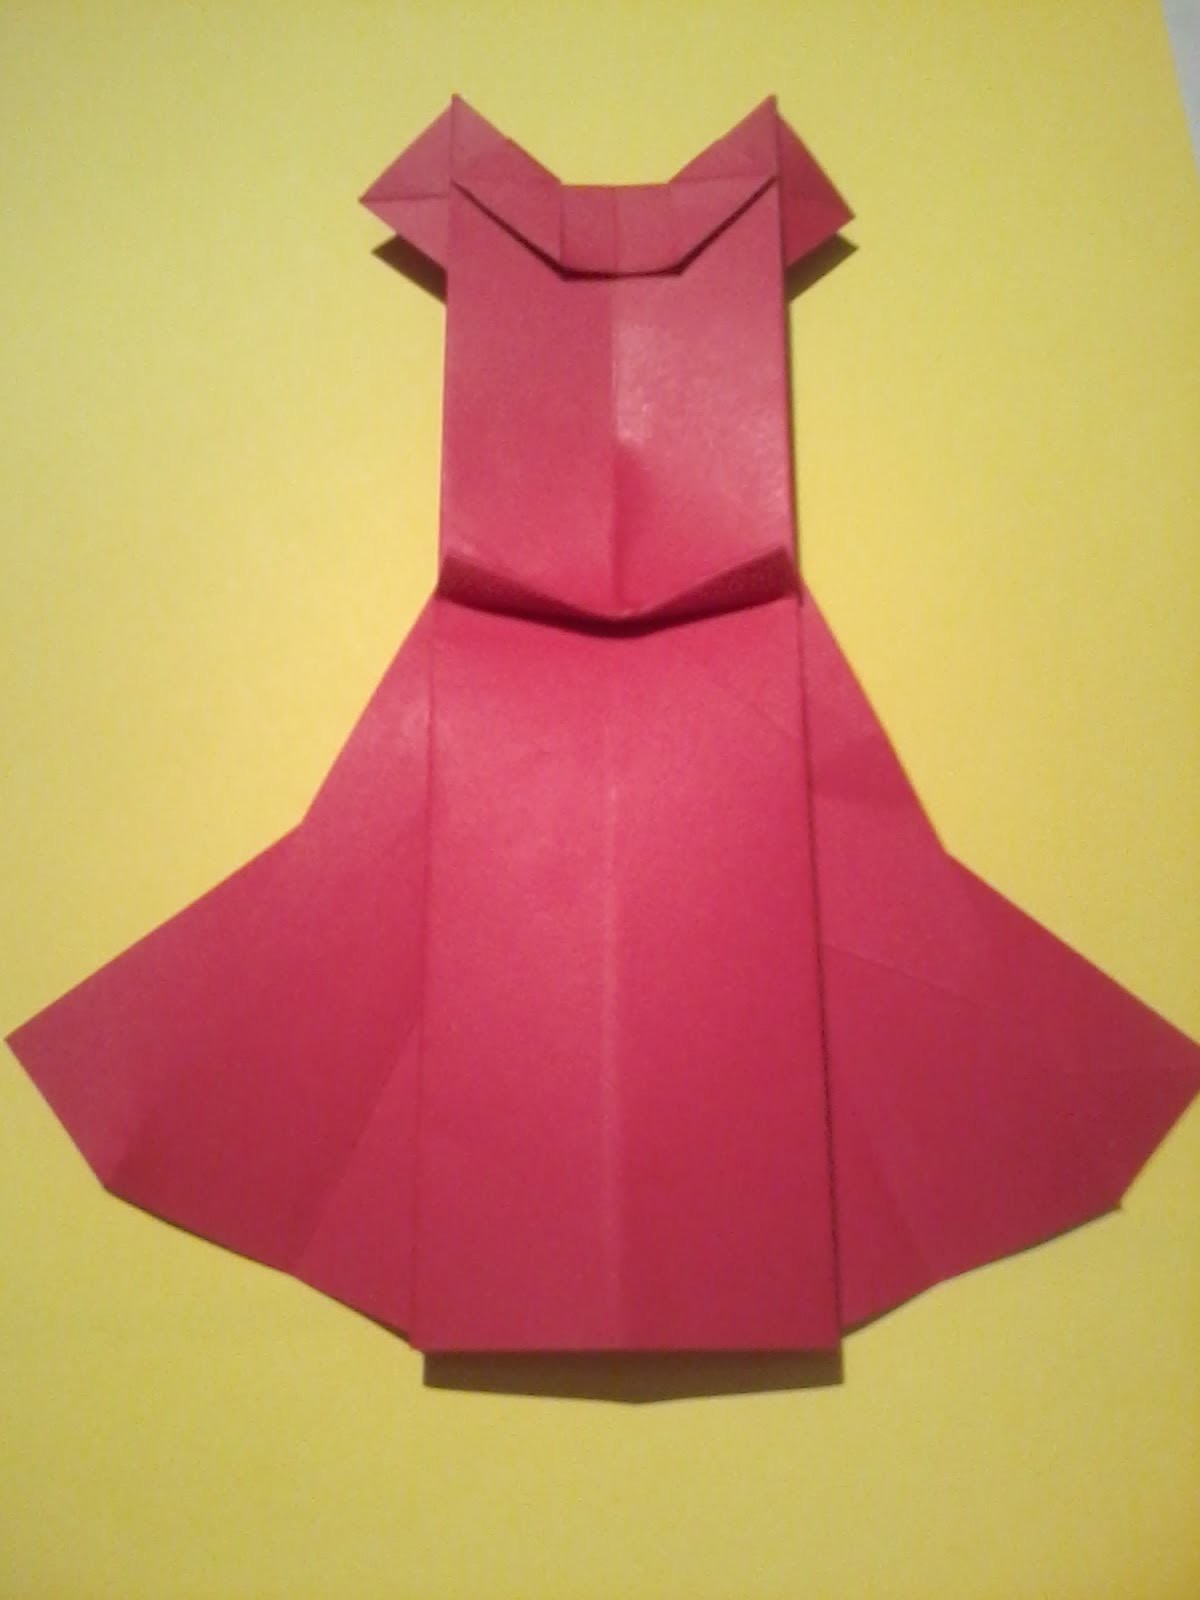 Tuto origami: la robe